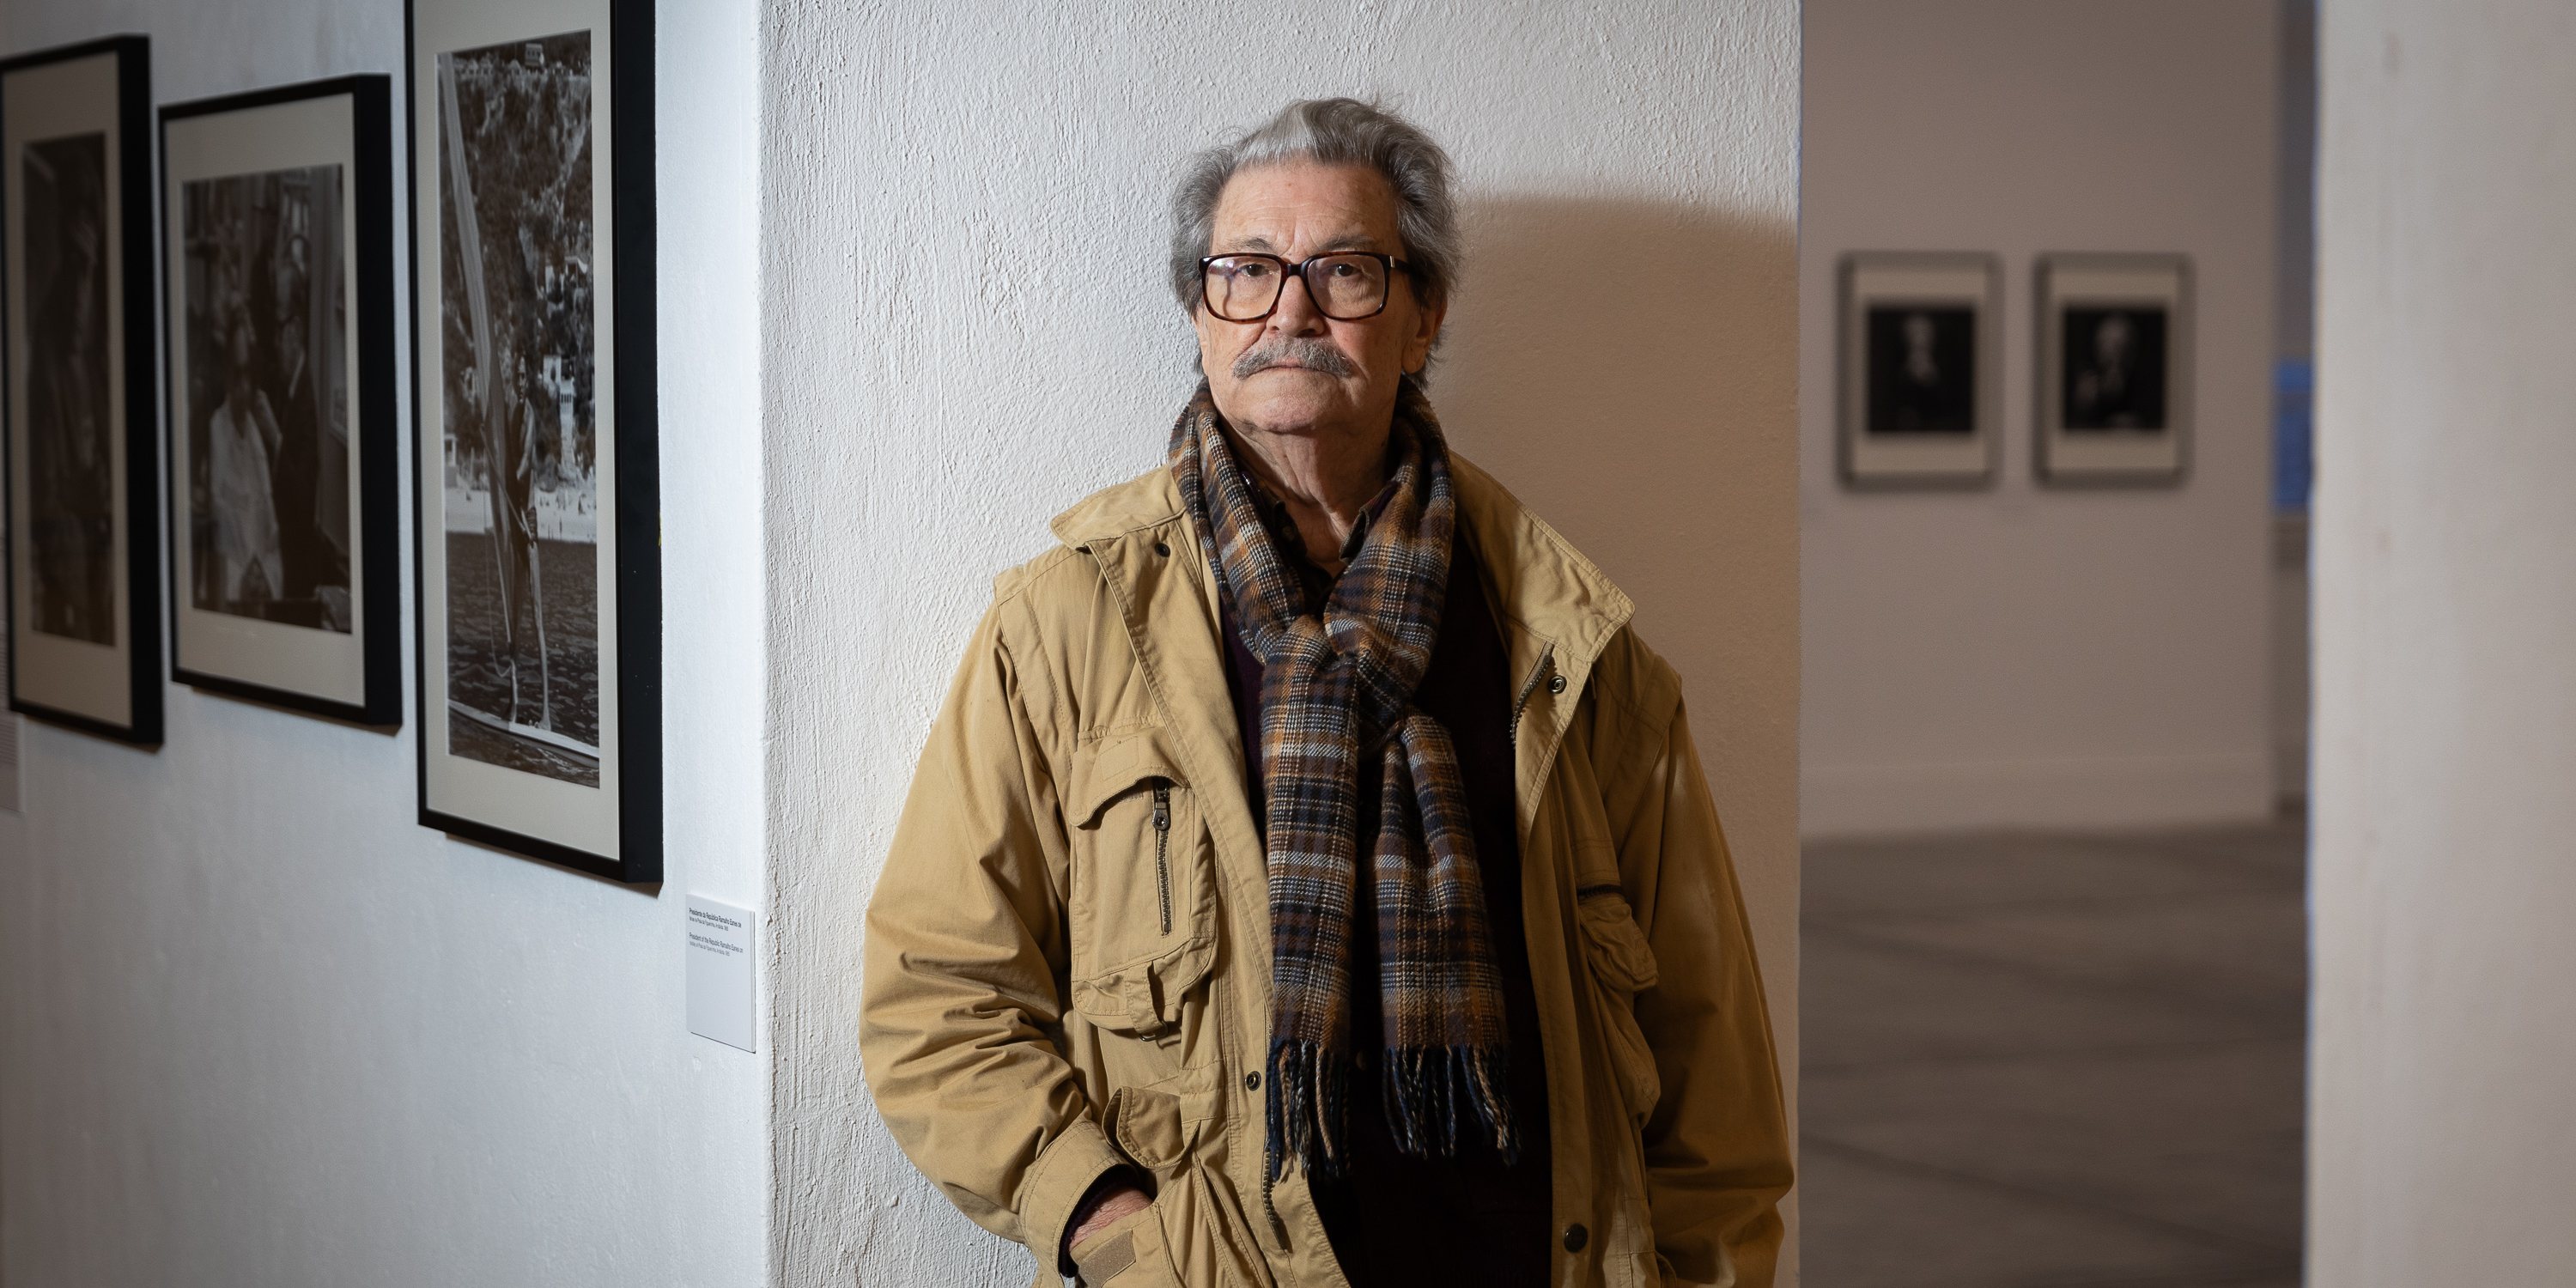 Prestes a completar 89 anos em fevereiro, o fotógrafo Eduardo Gageiro mostra na Cordoaria Nacional aquela que diz ser a sua maior exposição em Portugal até à data